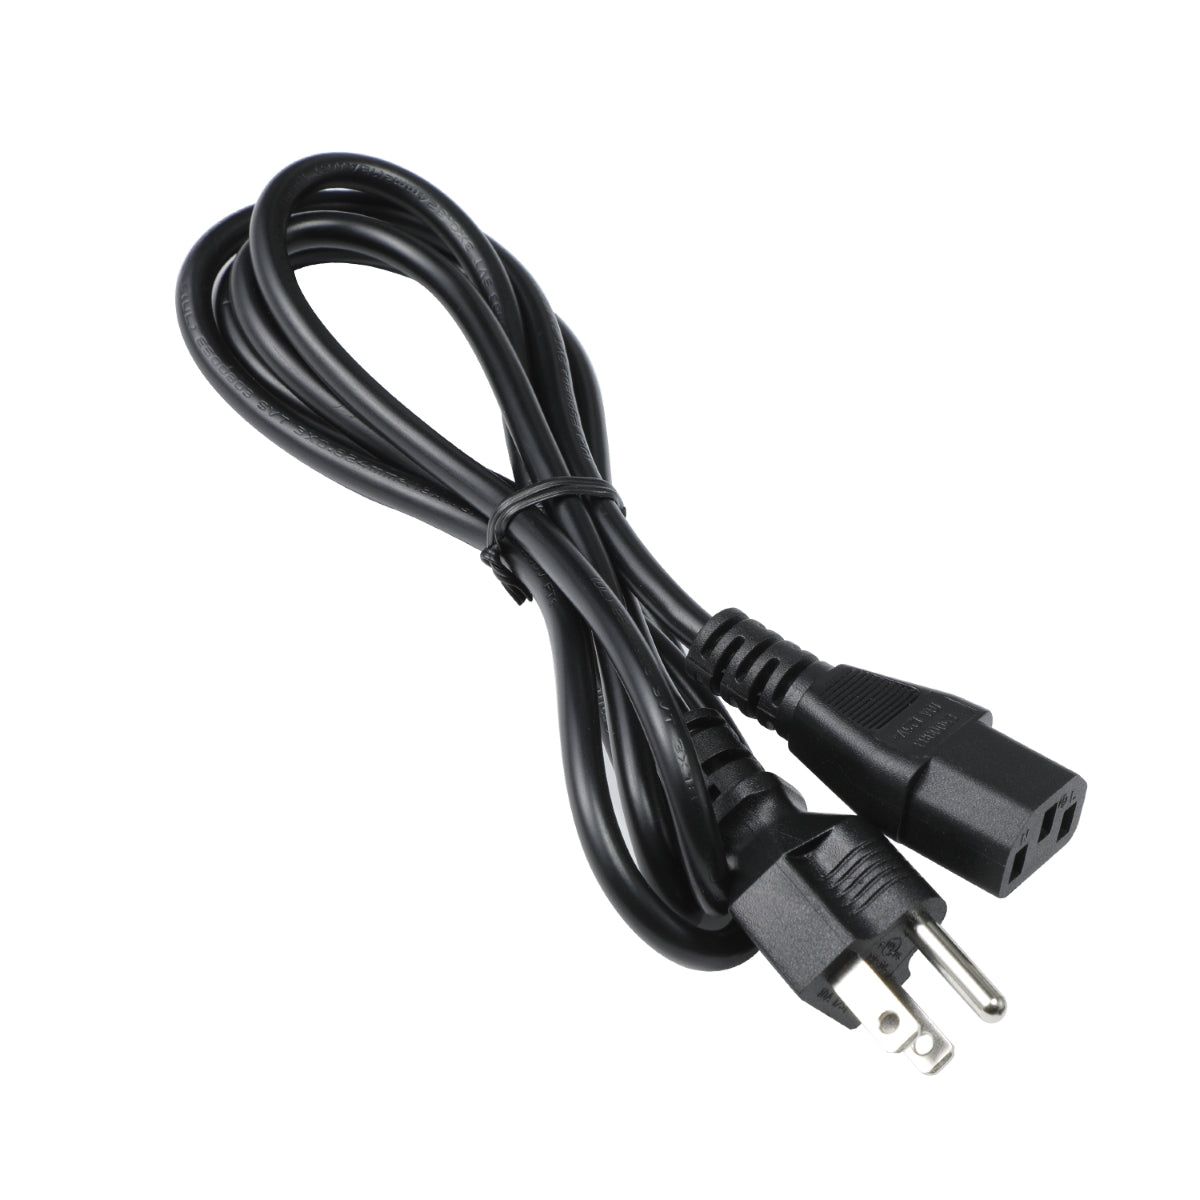 Power Cord for Dell U2721DE Monitor